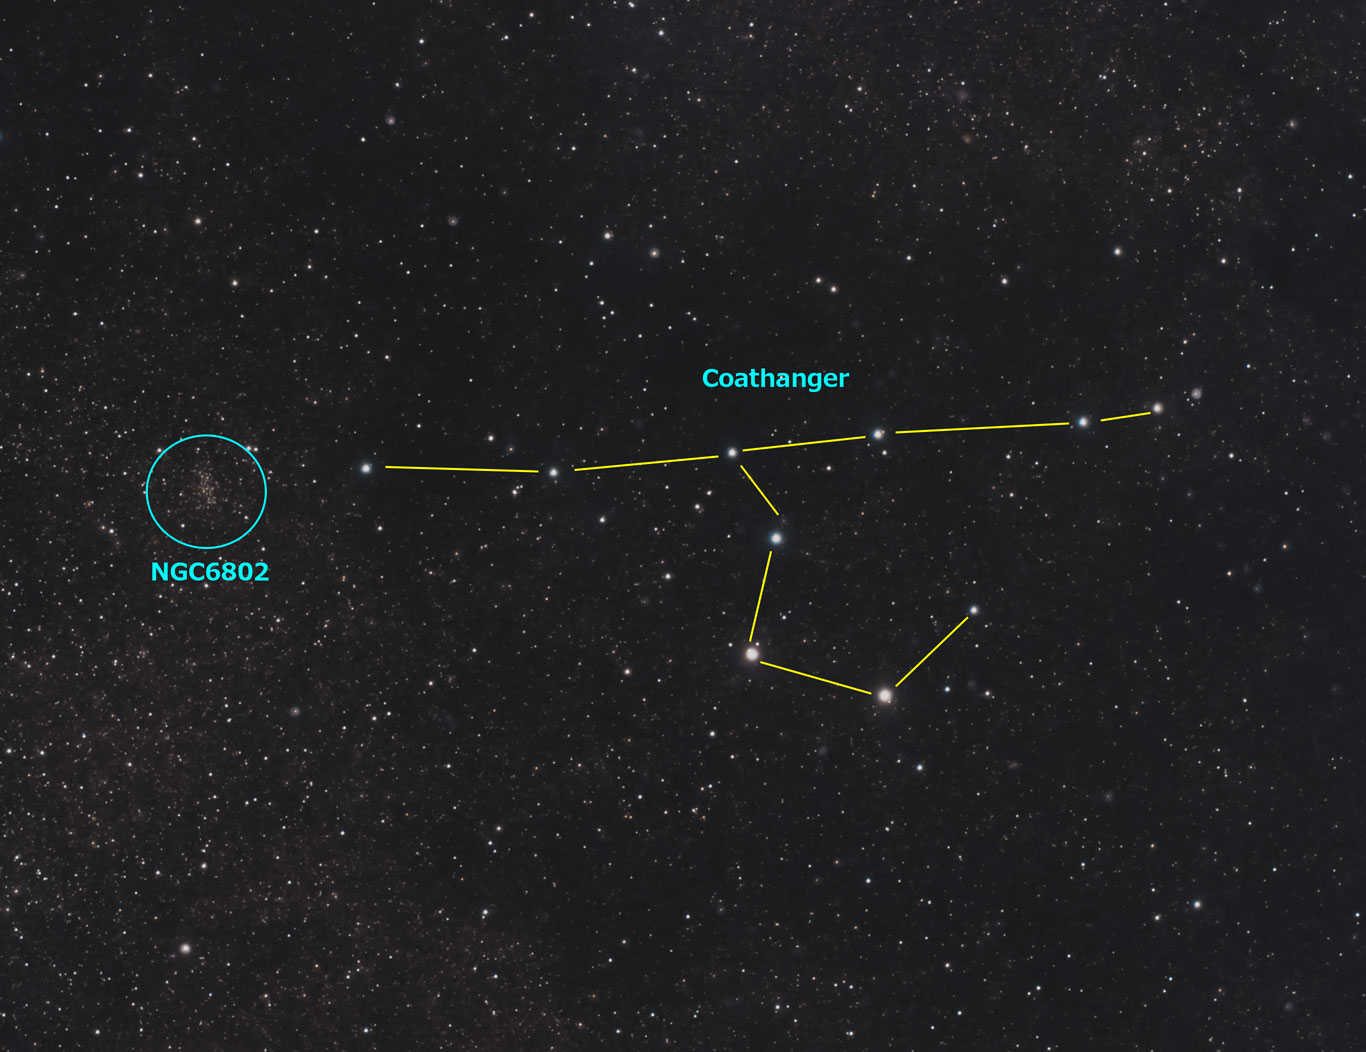 はくちょう座の散開星団NGC6802とコートハンガー星団